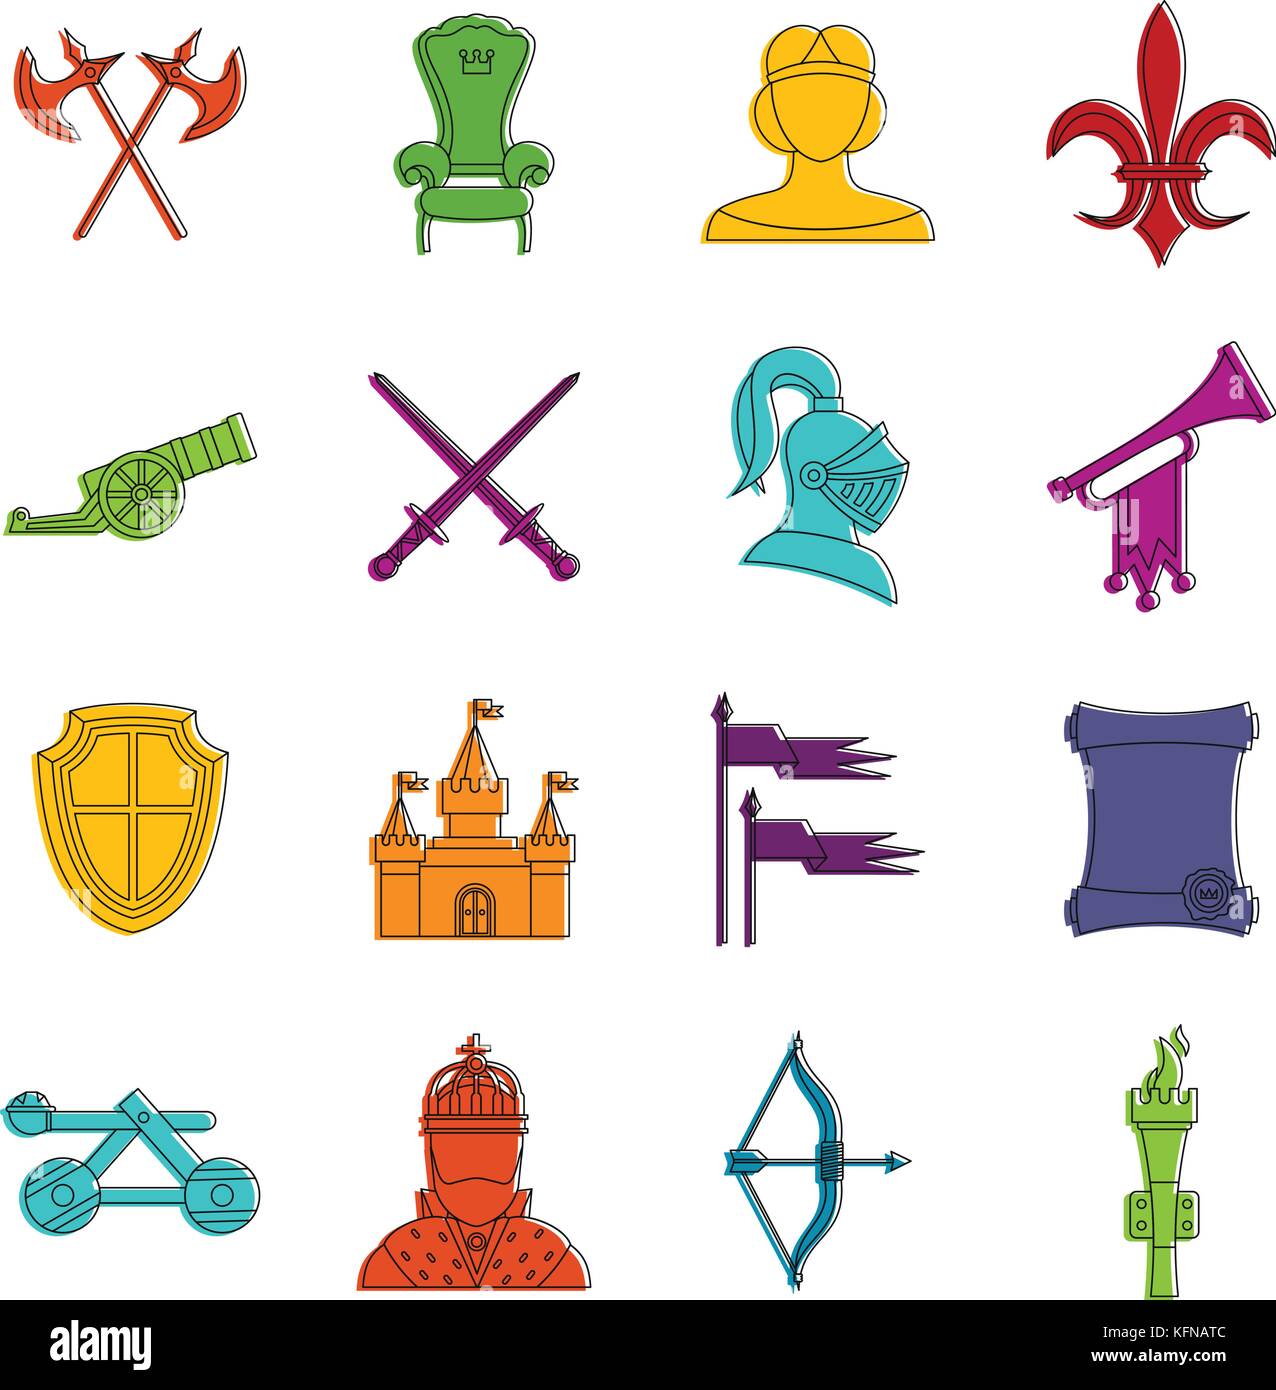 Ritter mittelalterliche Symbole doodle einrichten Stock Vektor